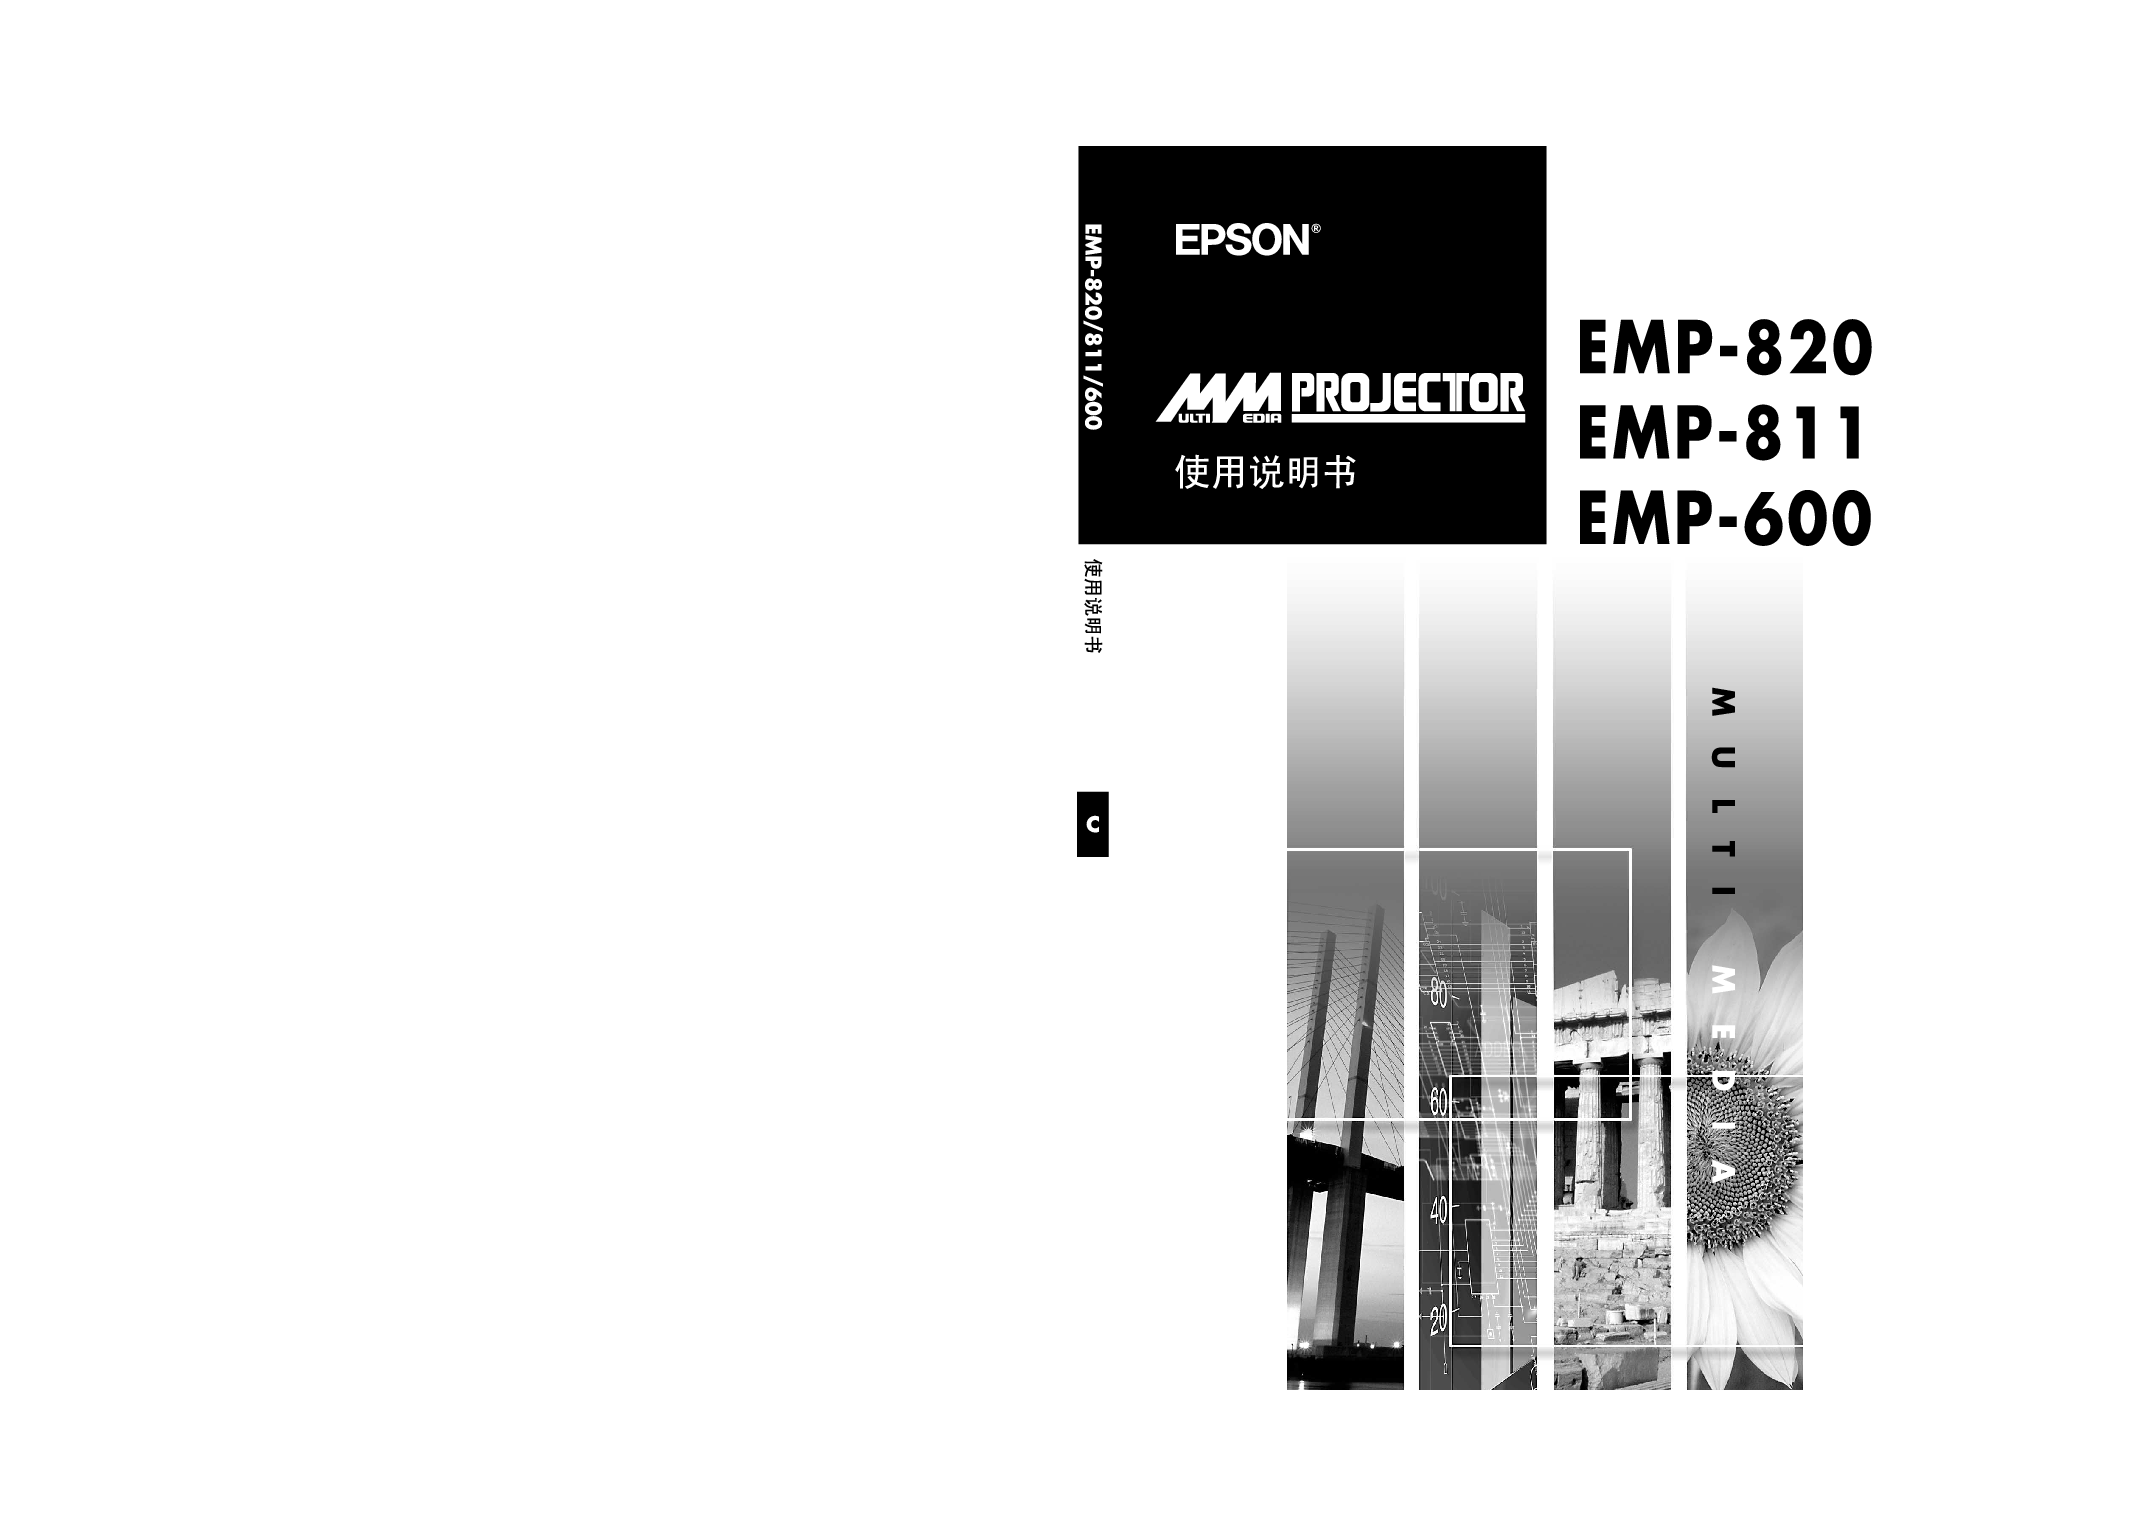 爱普生 Epson EMP-600, EMP-811 使用说明书 封面